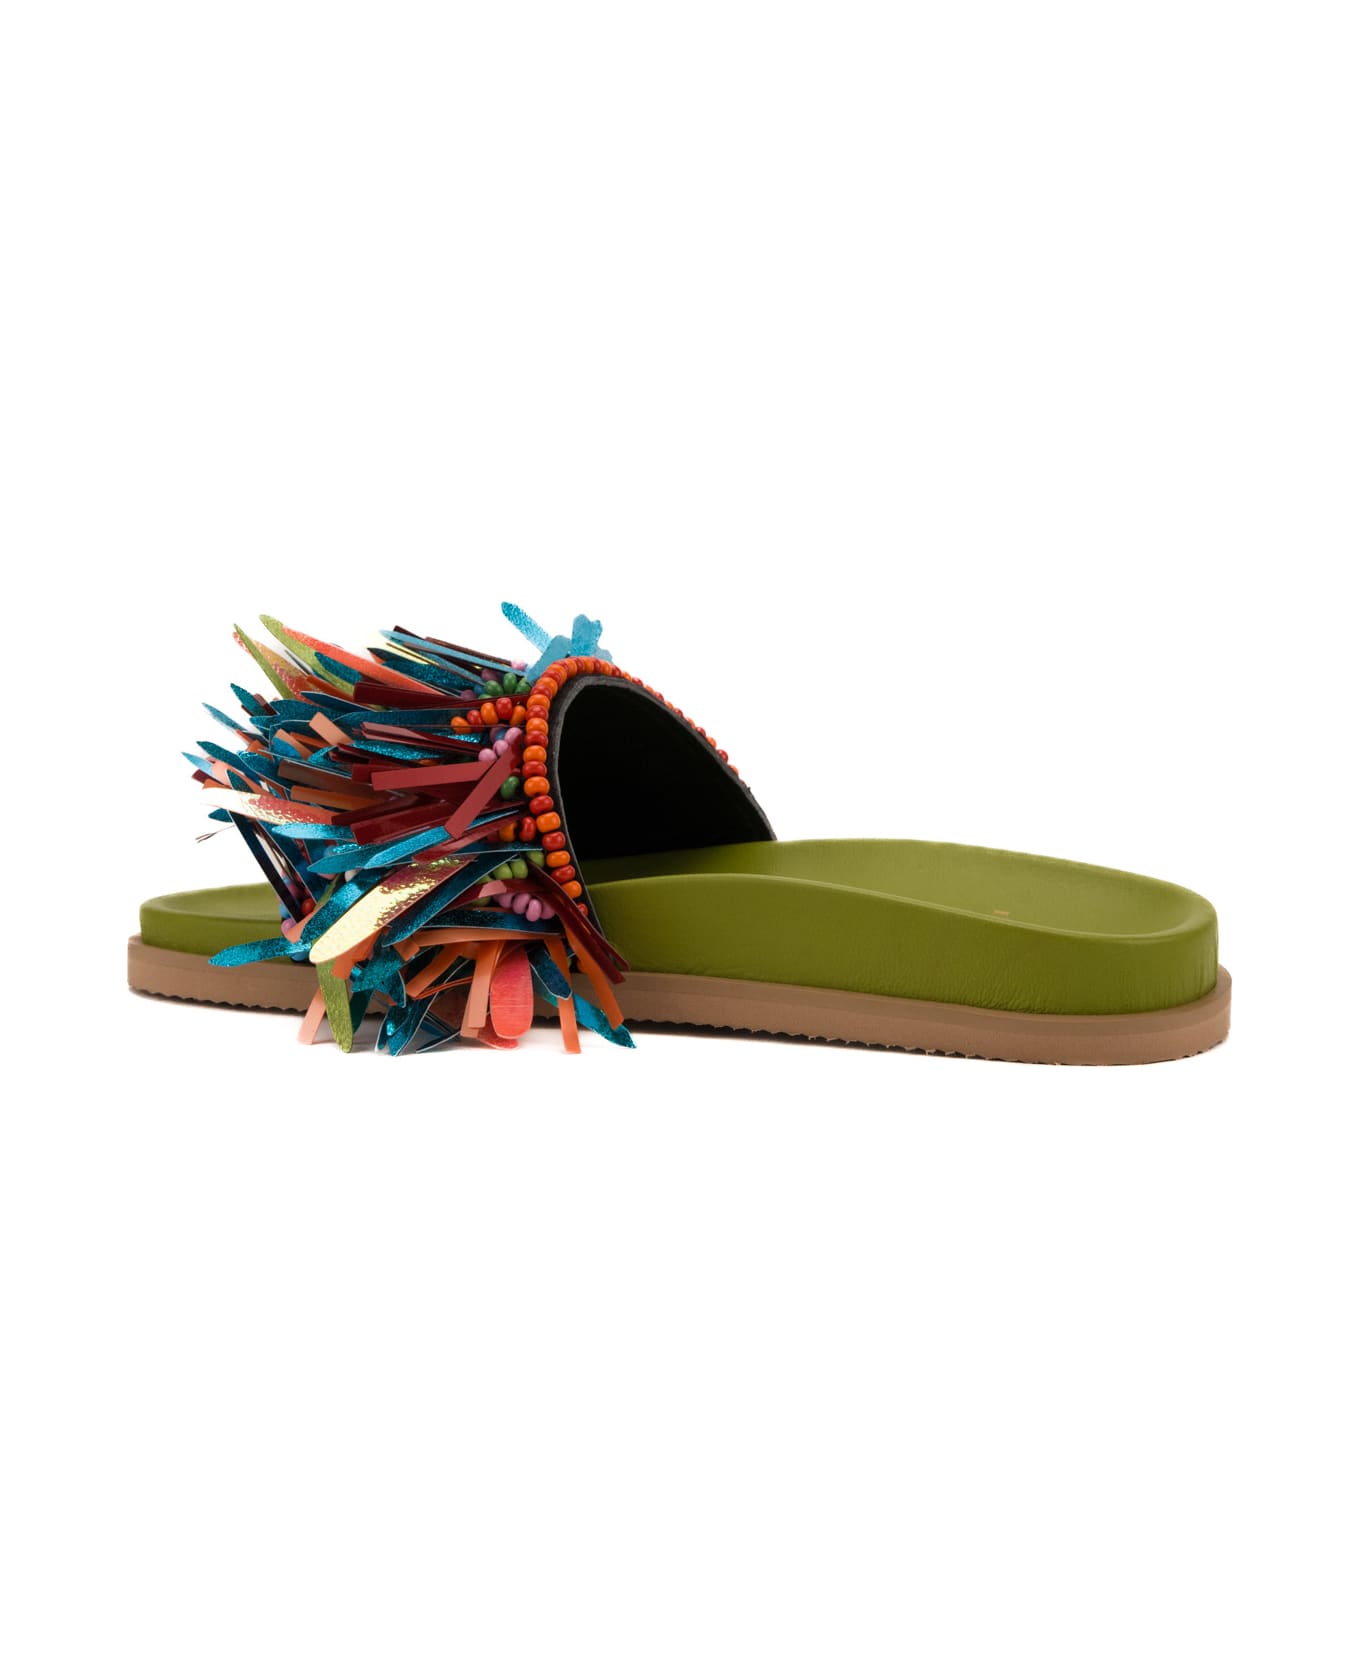 De Siena Tucan Sandals - Green multicolor サンダル